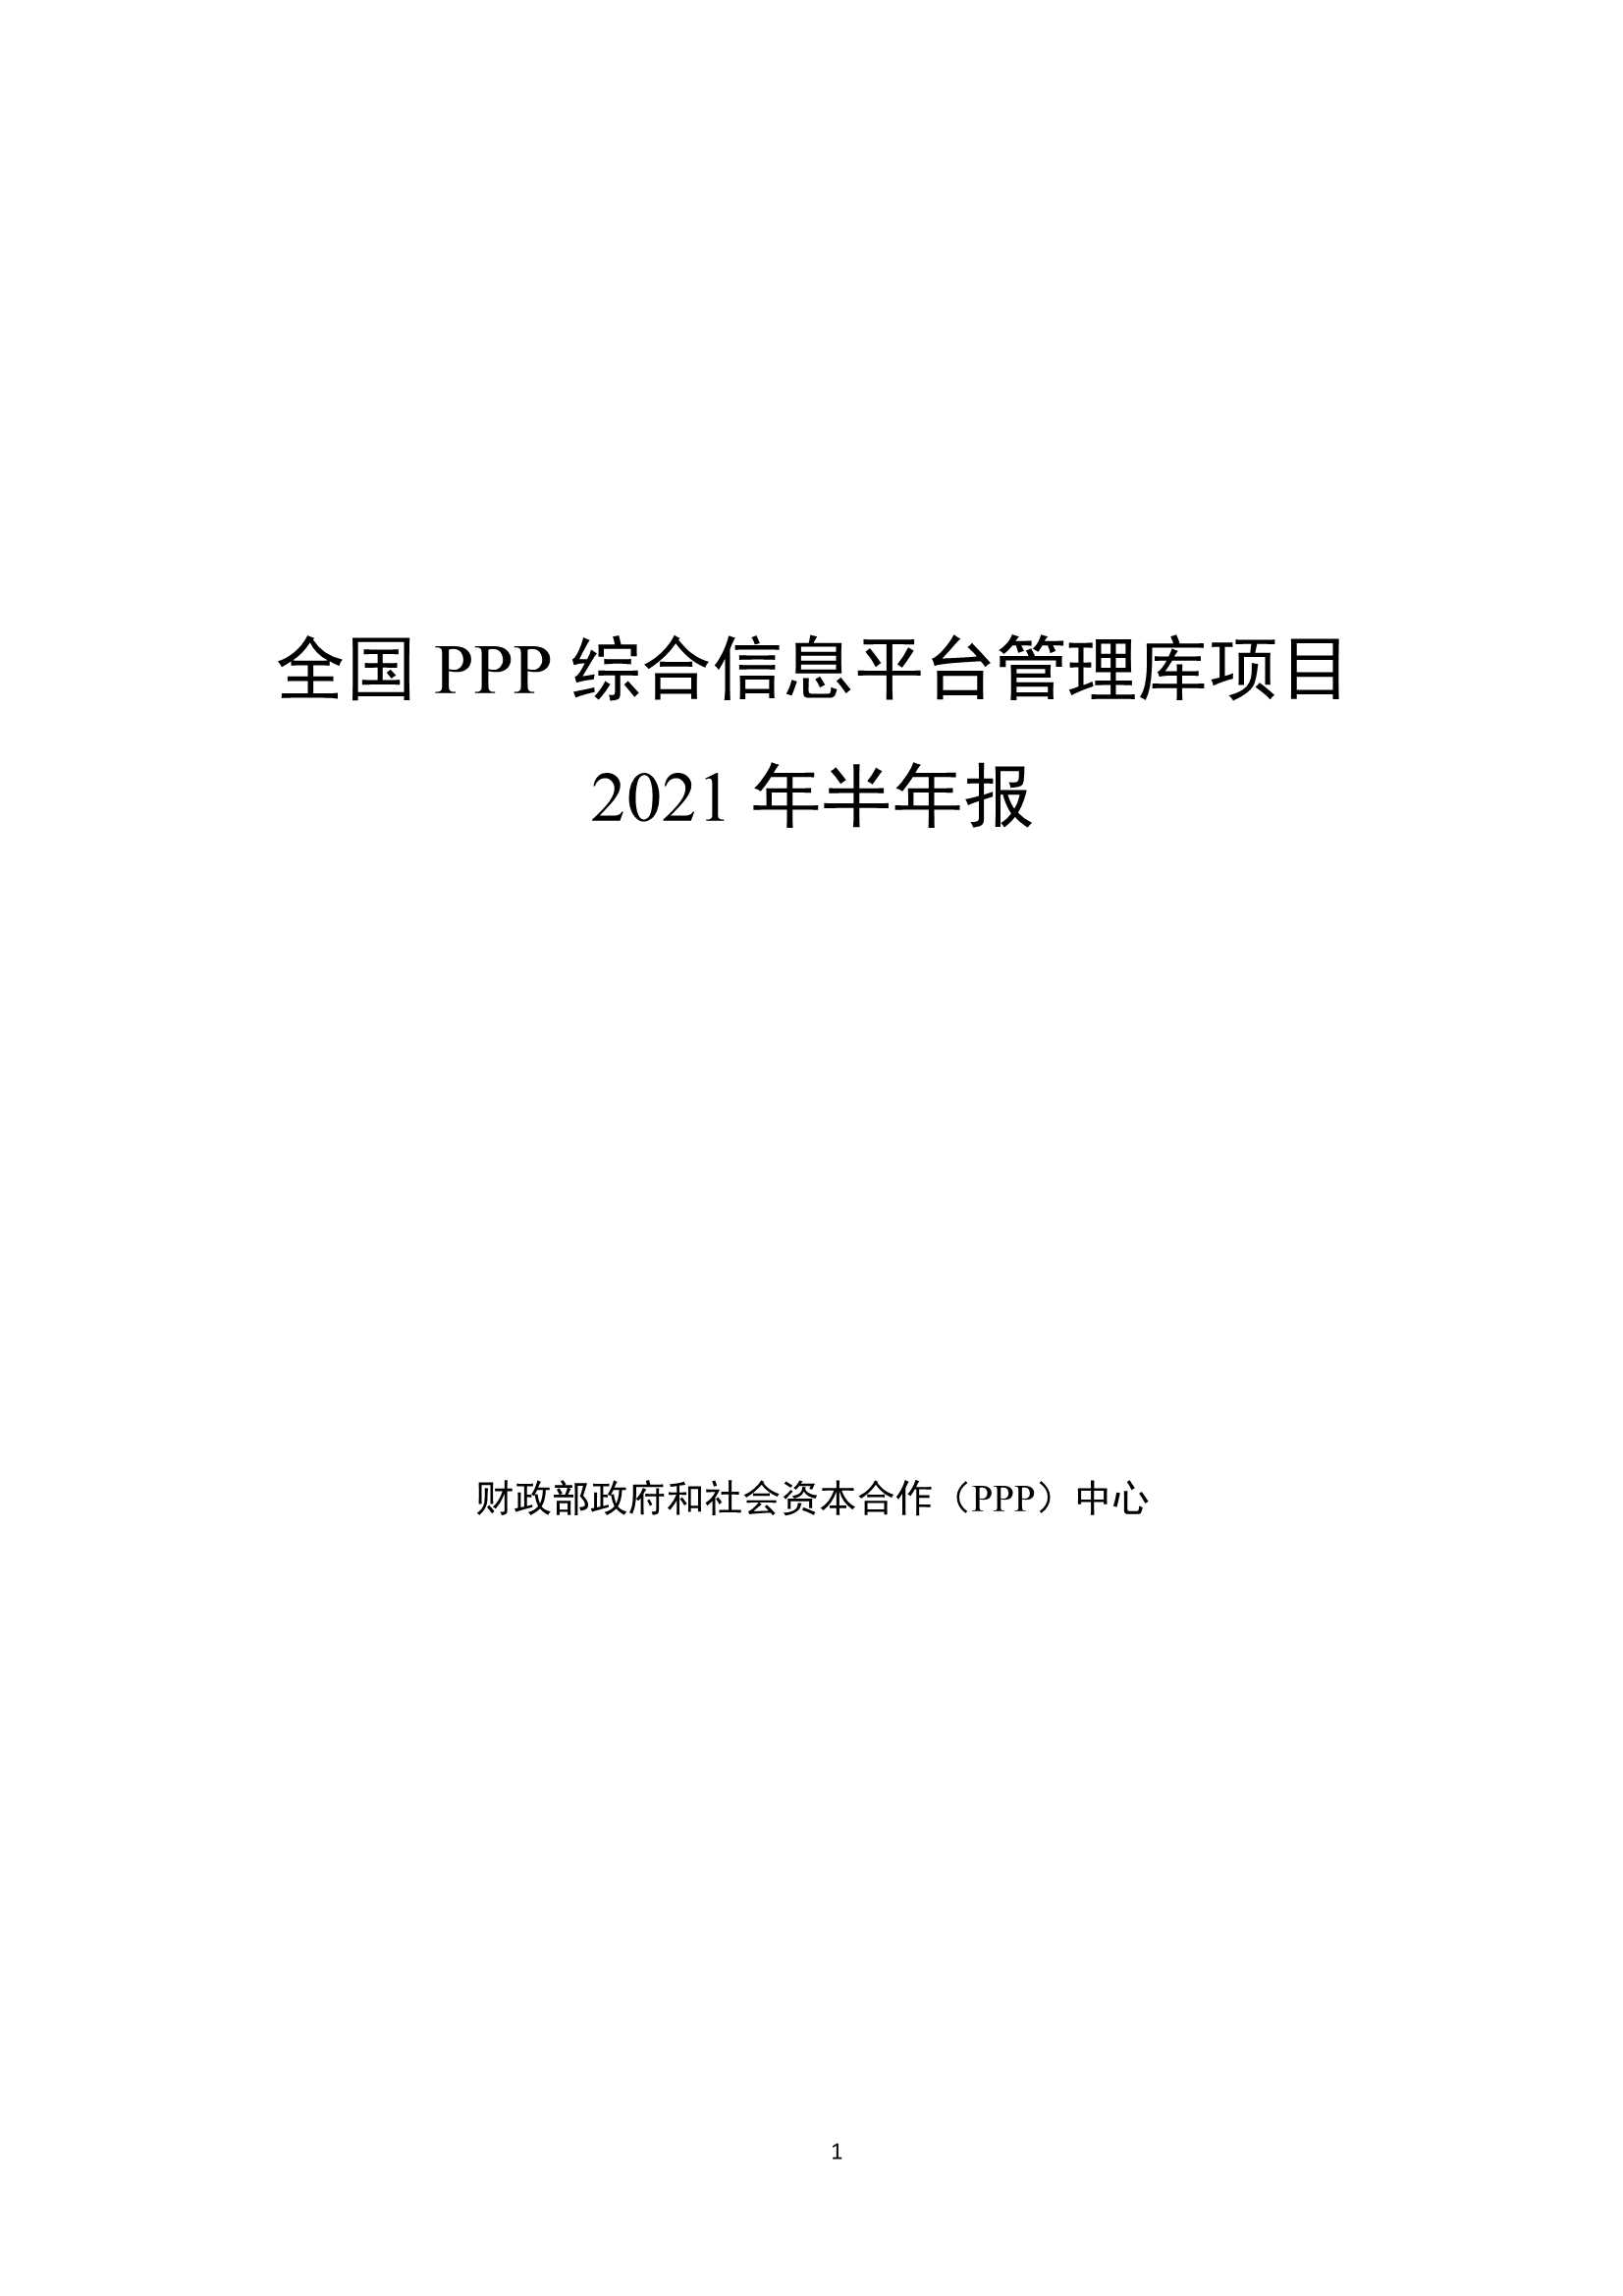 全国PPP综合信息平台管理库项目2021年半年报-2021.07-57页